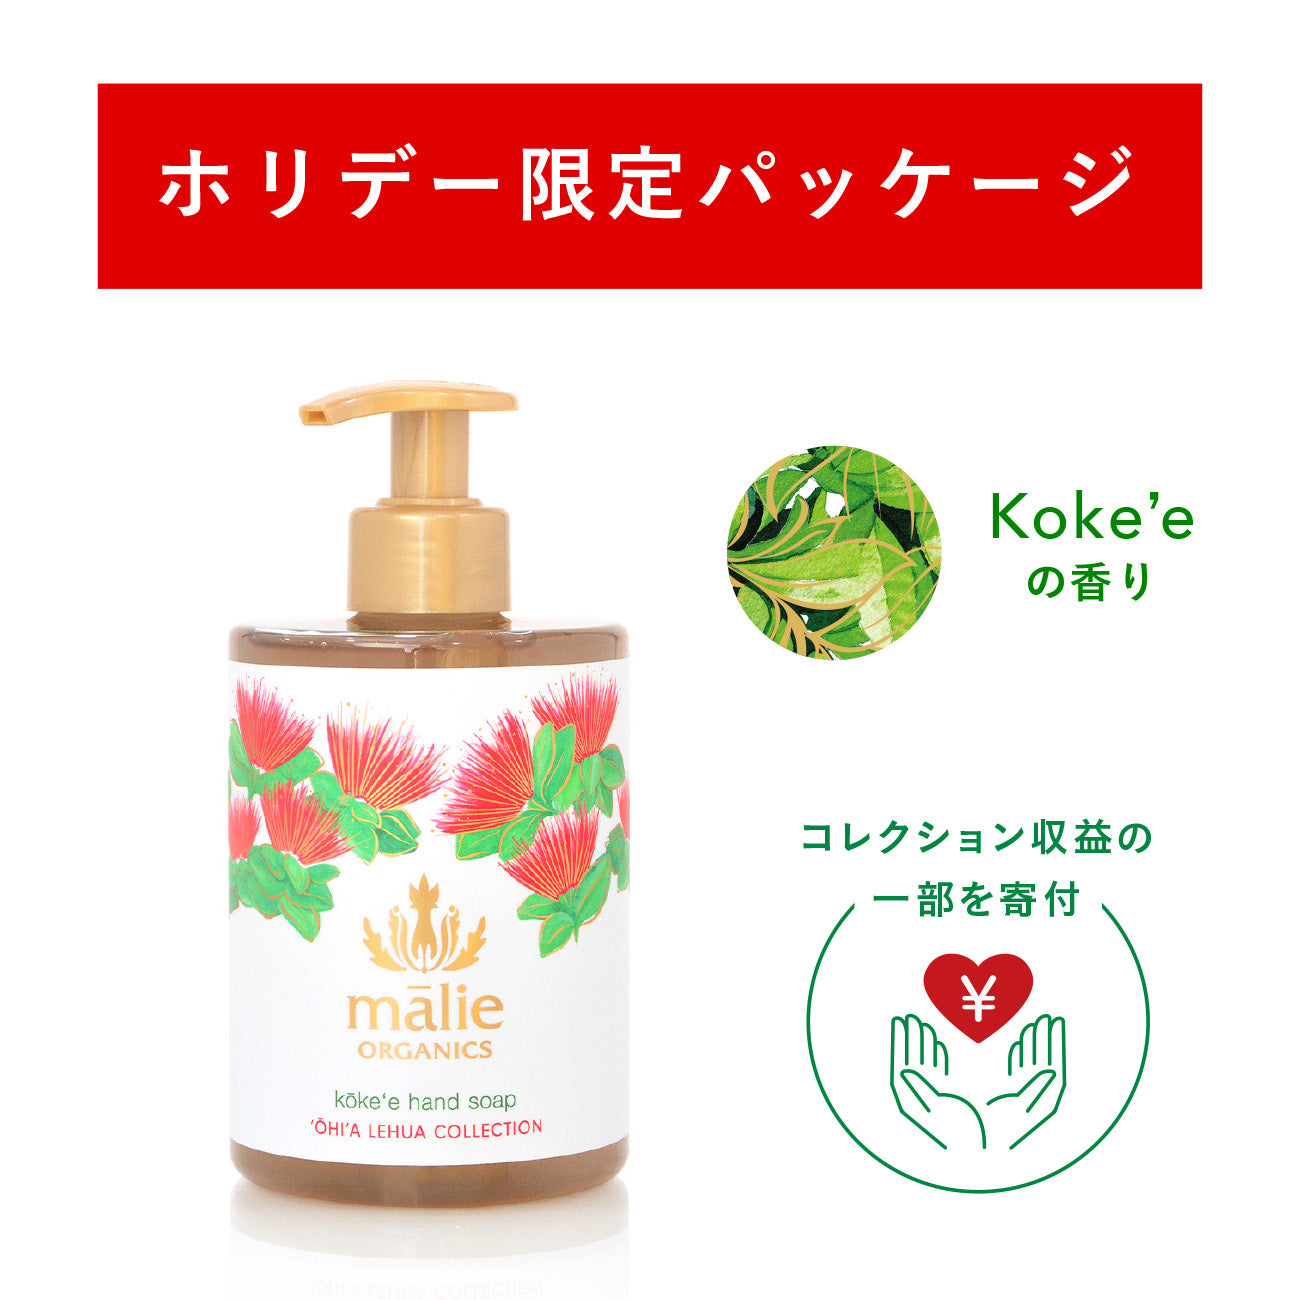 マリエオーガニクス日本公式サイト - Malie Organics 公式オンラインストア